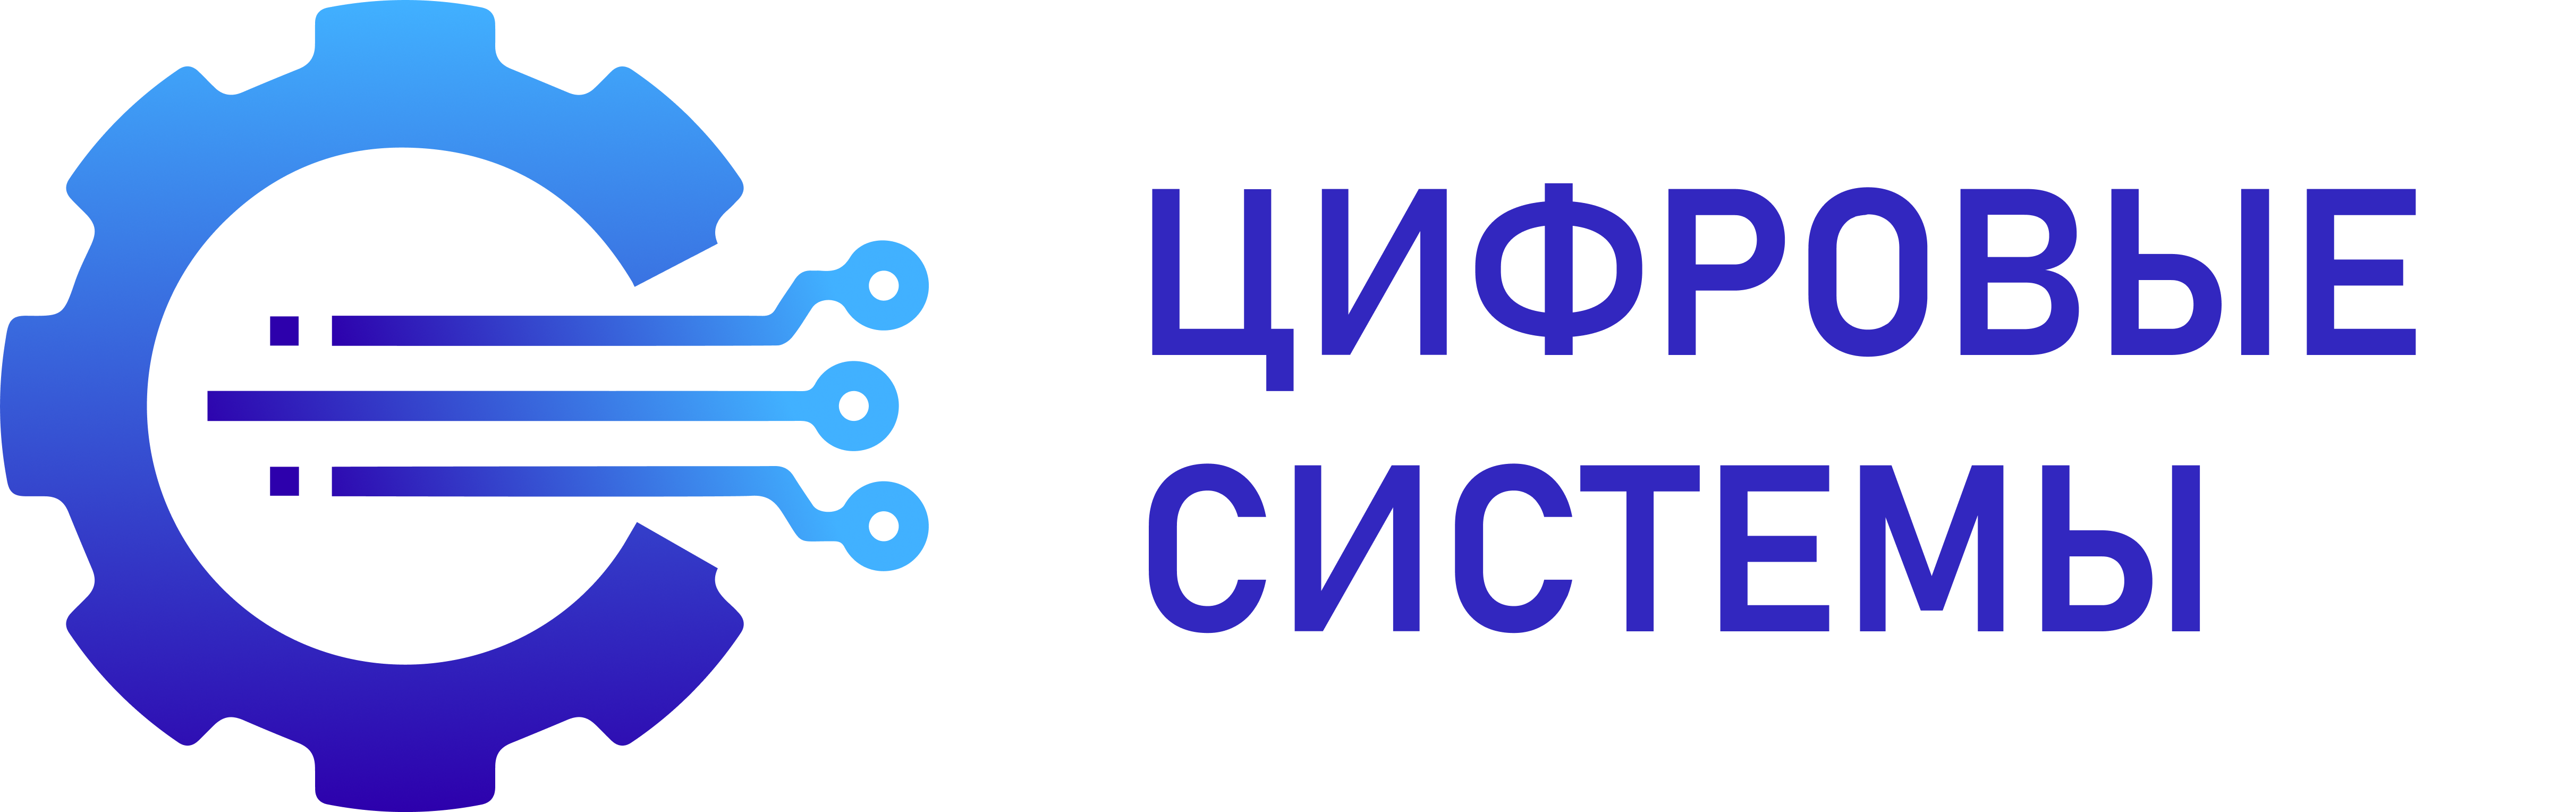 Цифровые системы - логотип